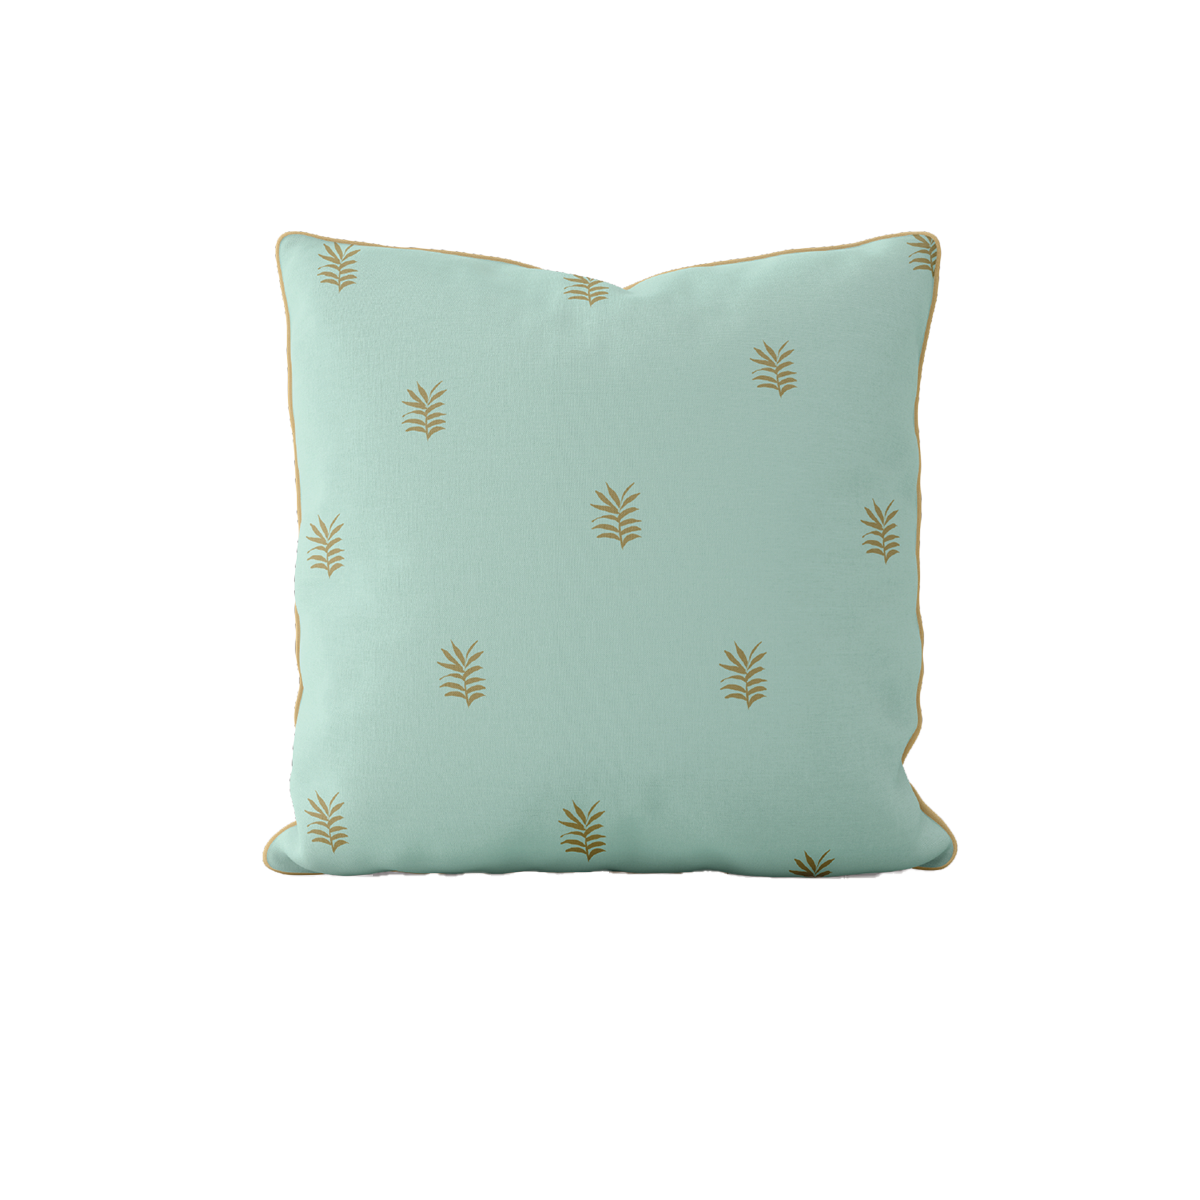 WHOLESALE: Golden Palm Seafoam Pillow Covers Bulk